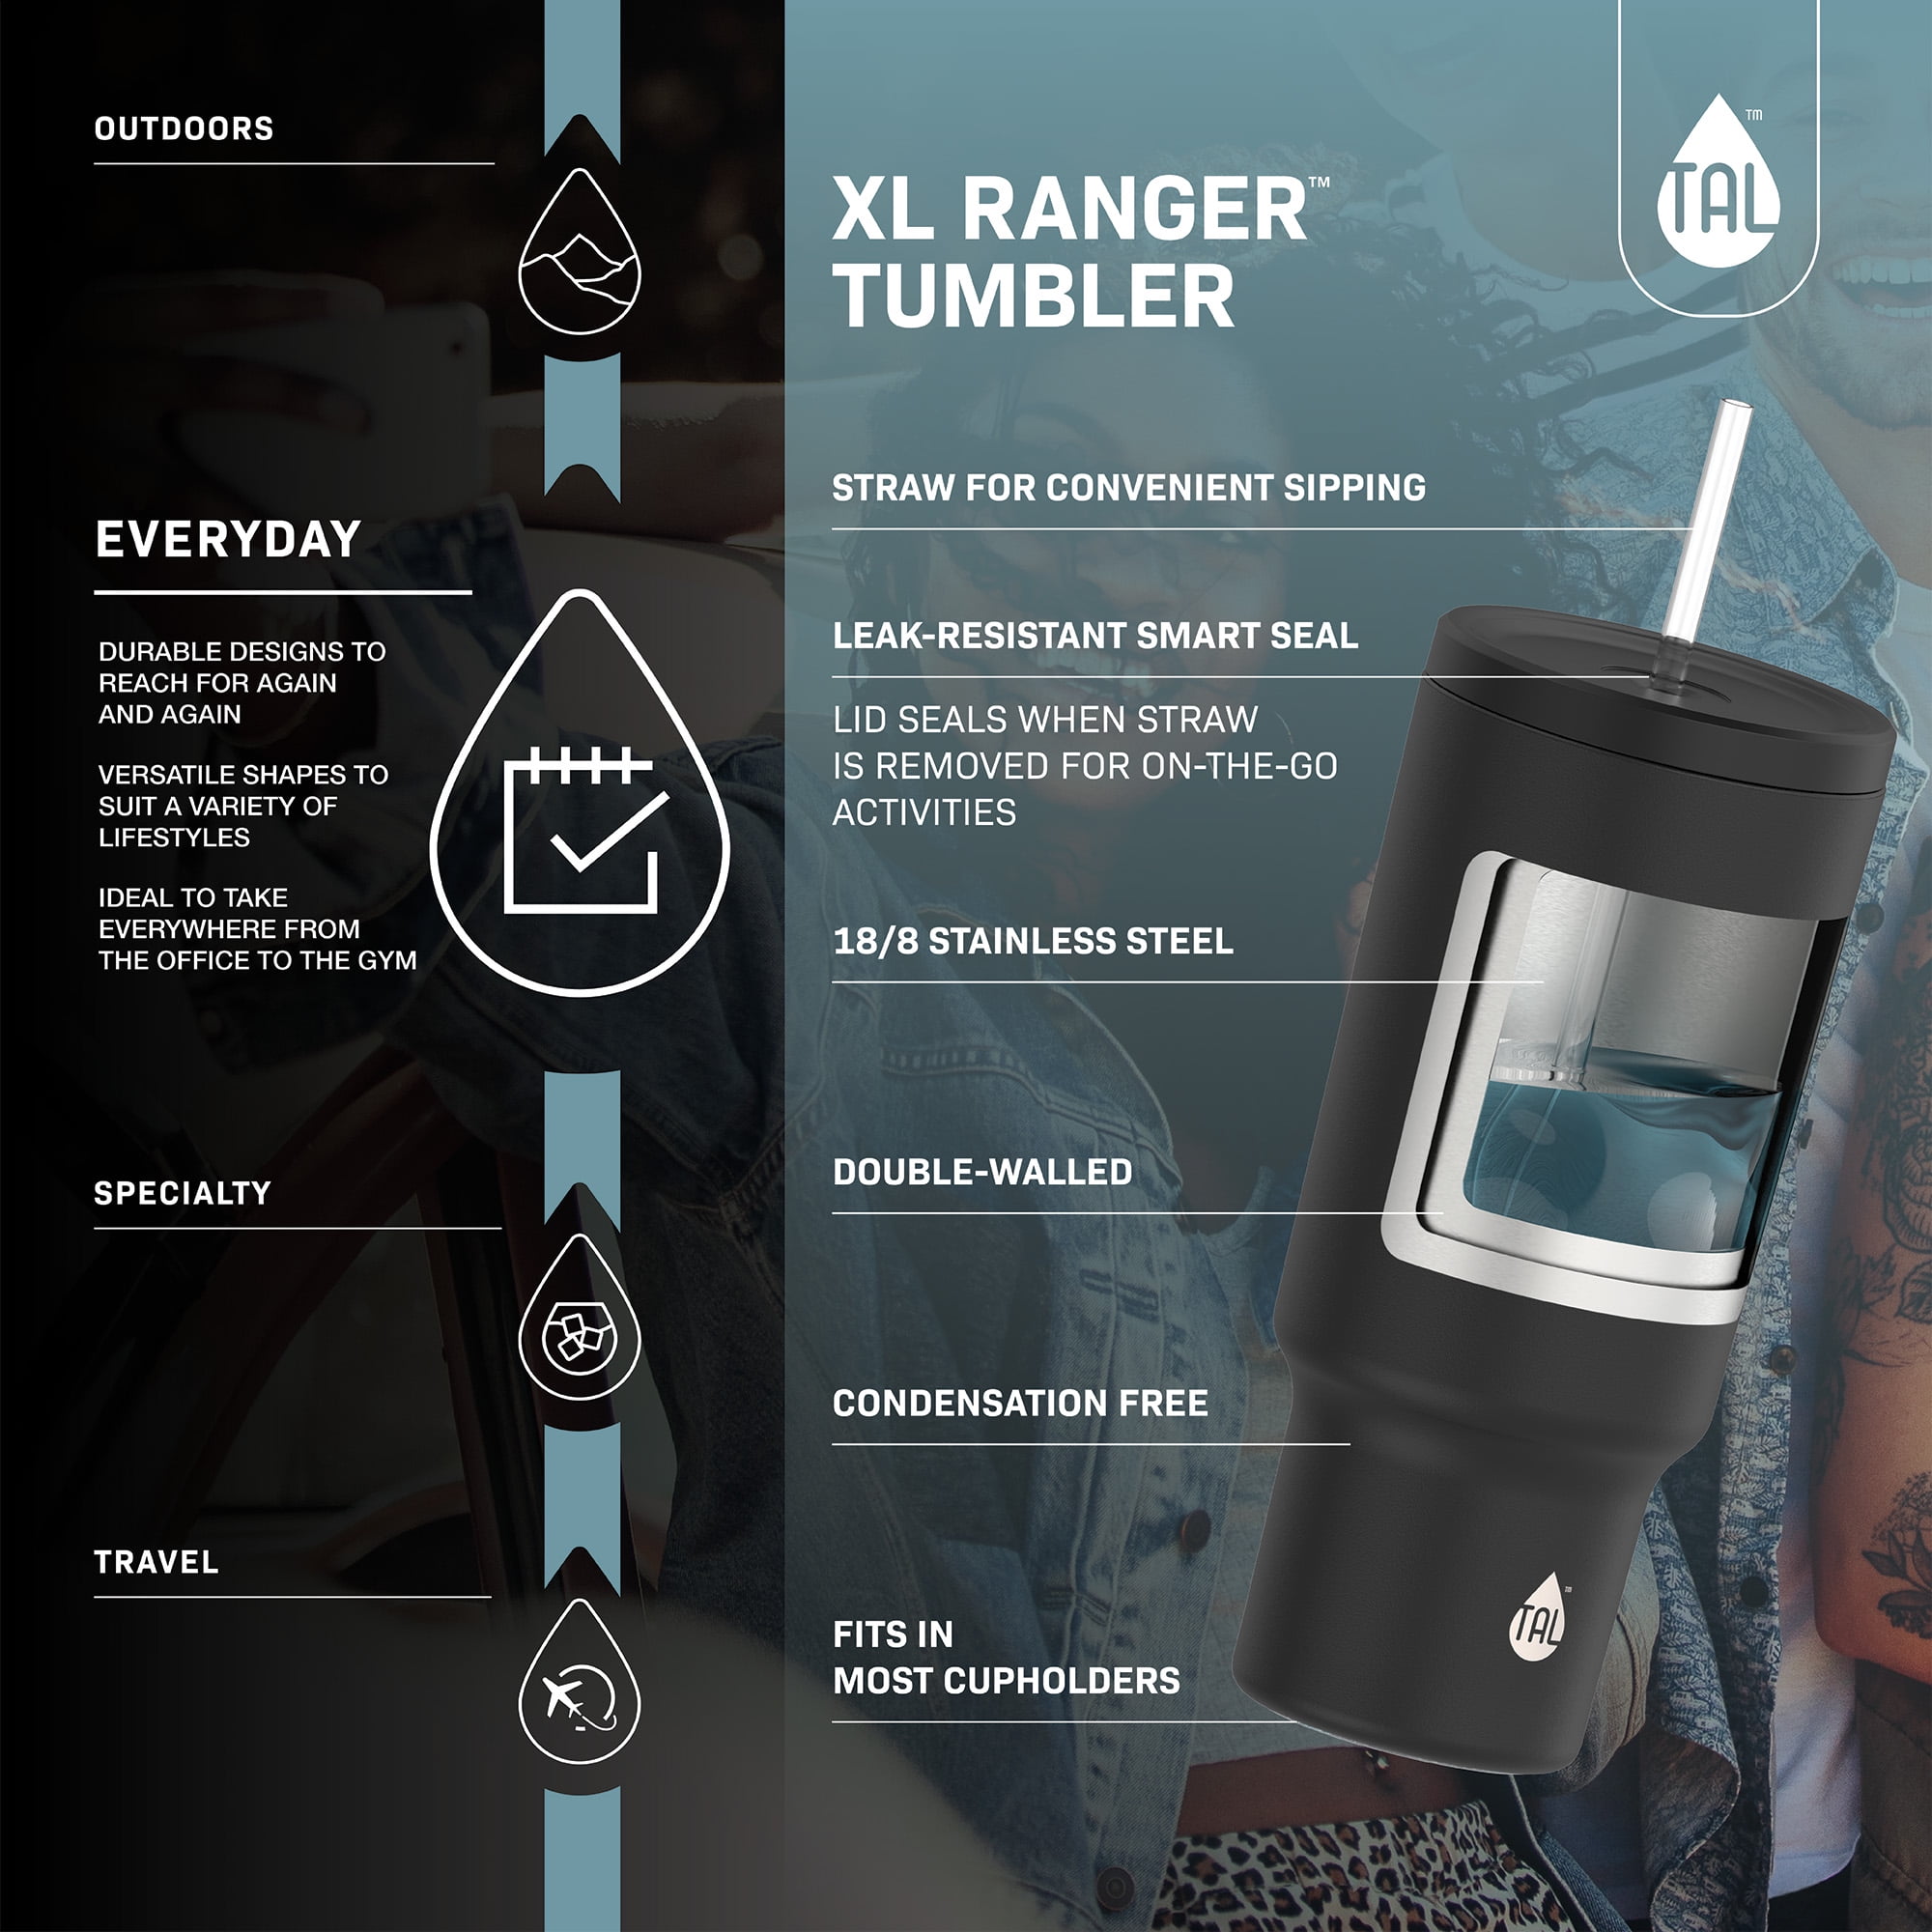 IWOM Stainless Steel Ranger Water Bottle 40 fl oz by TAL